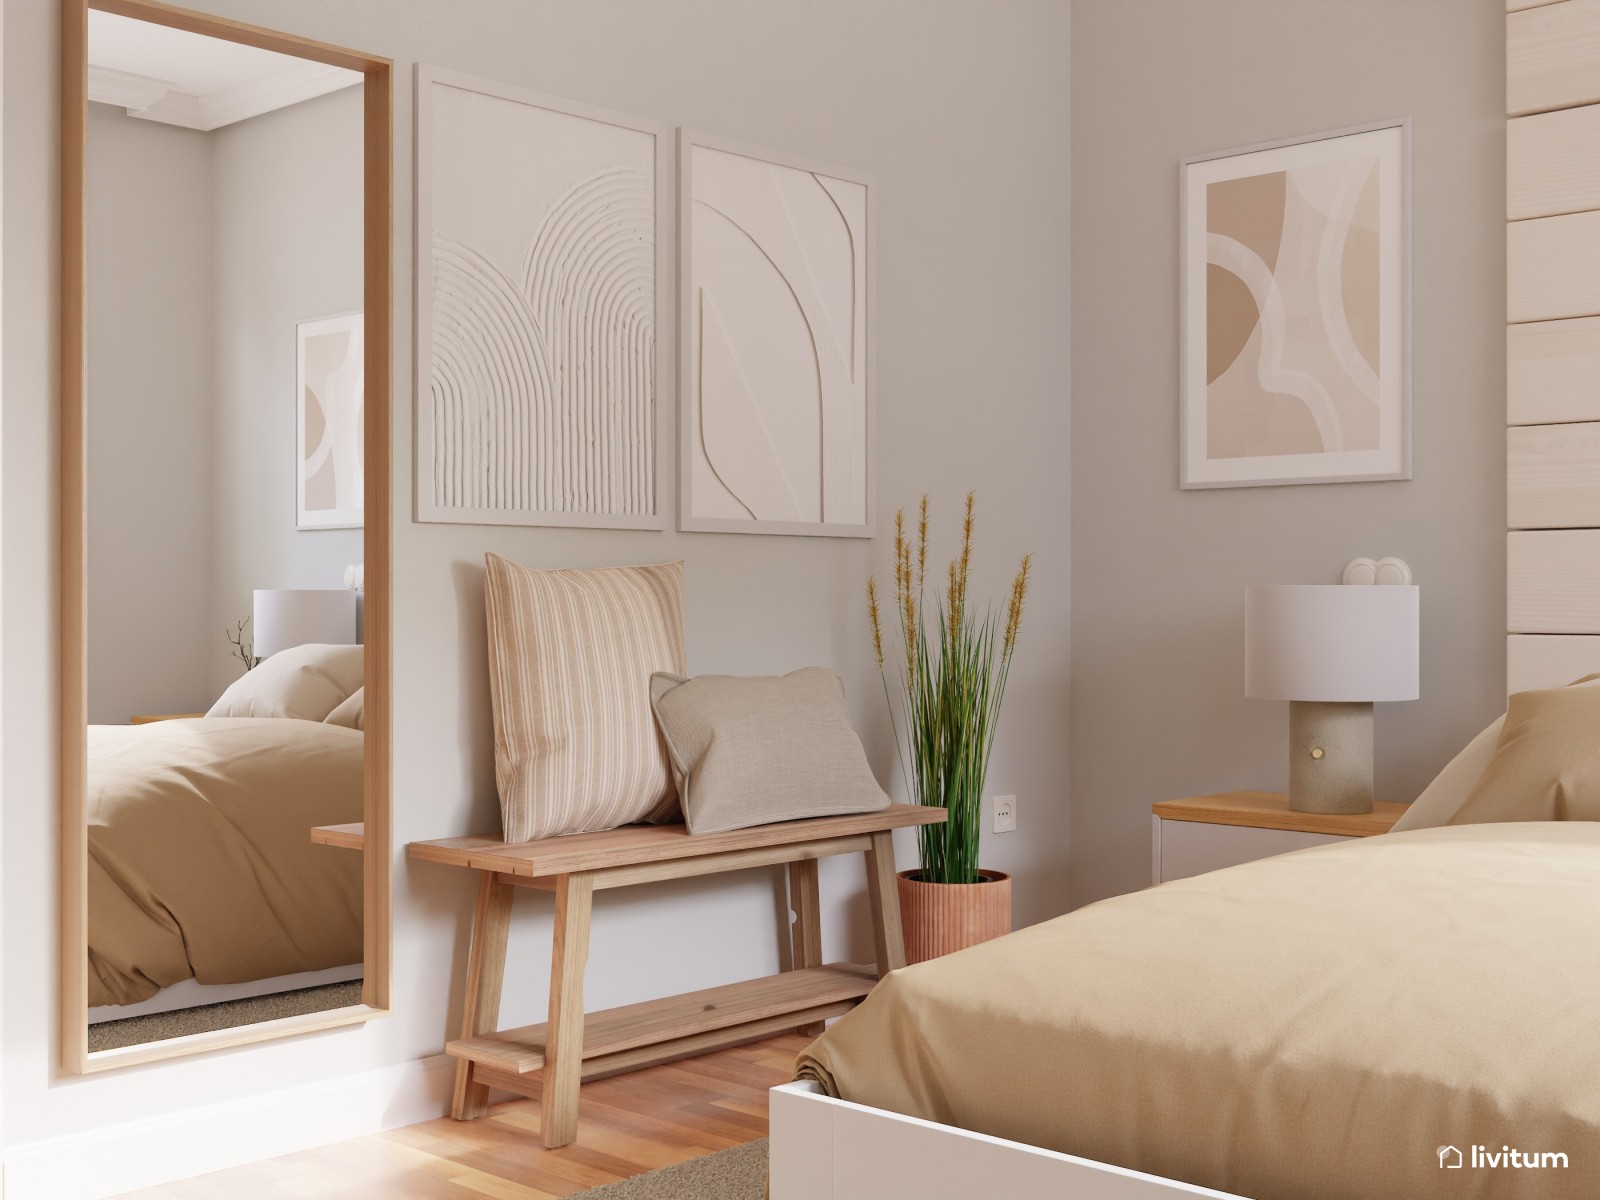 Dormitorio rústico y vintage en tonos claros 